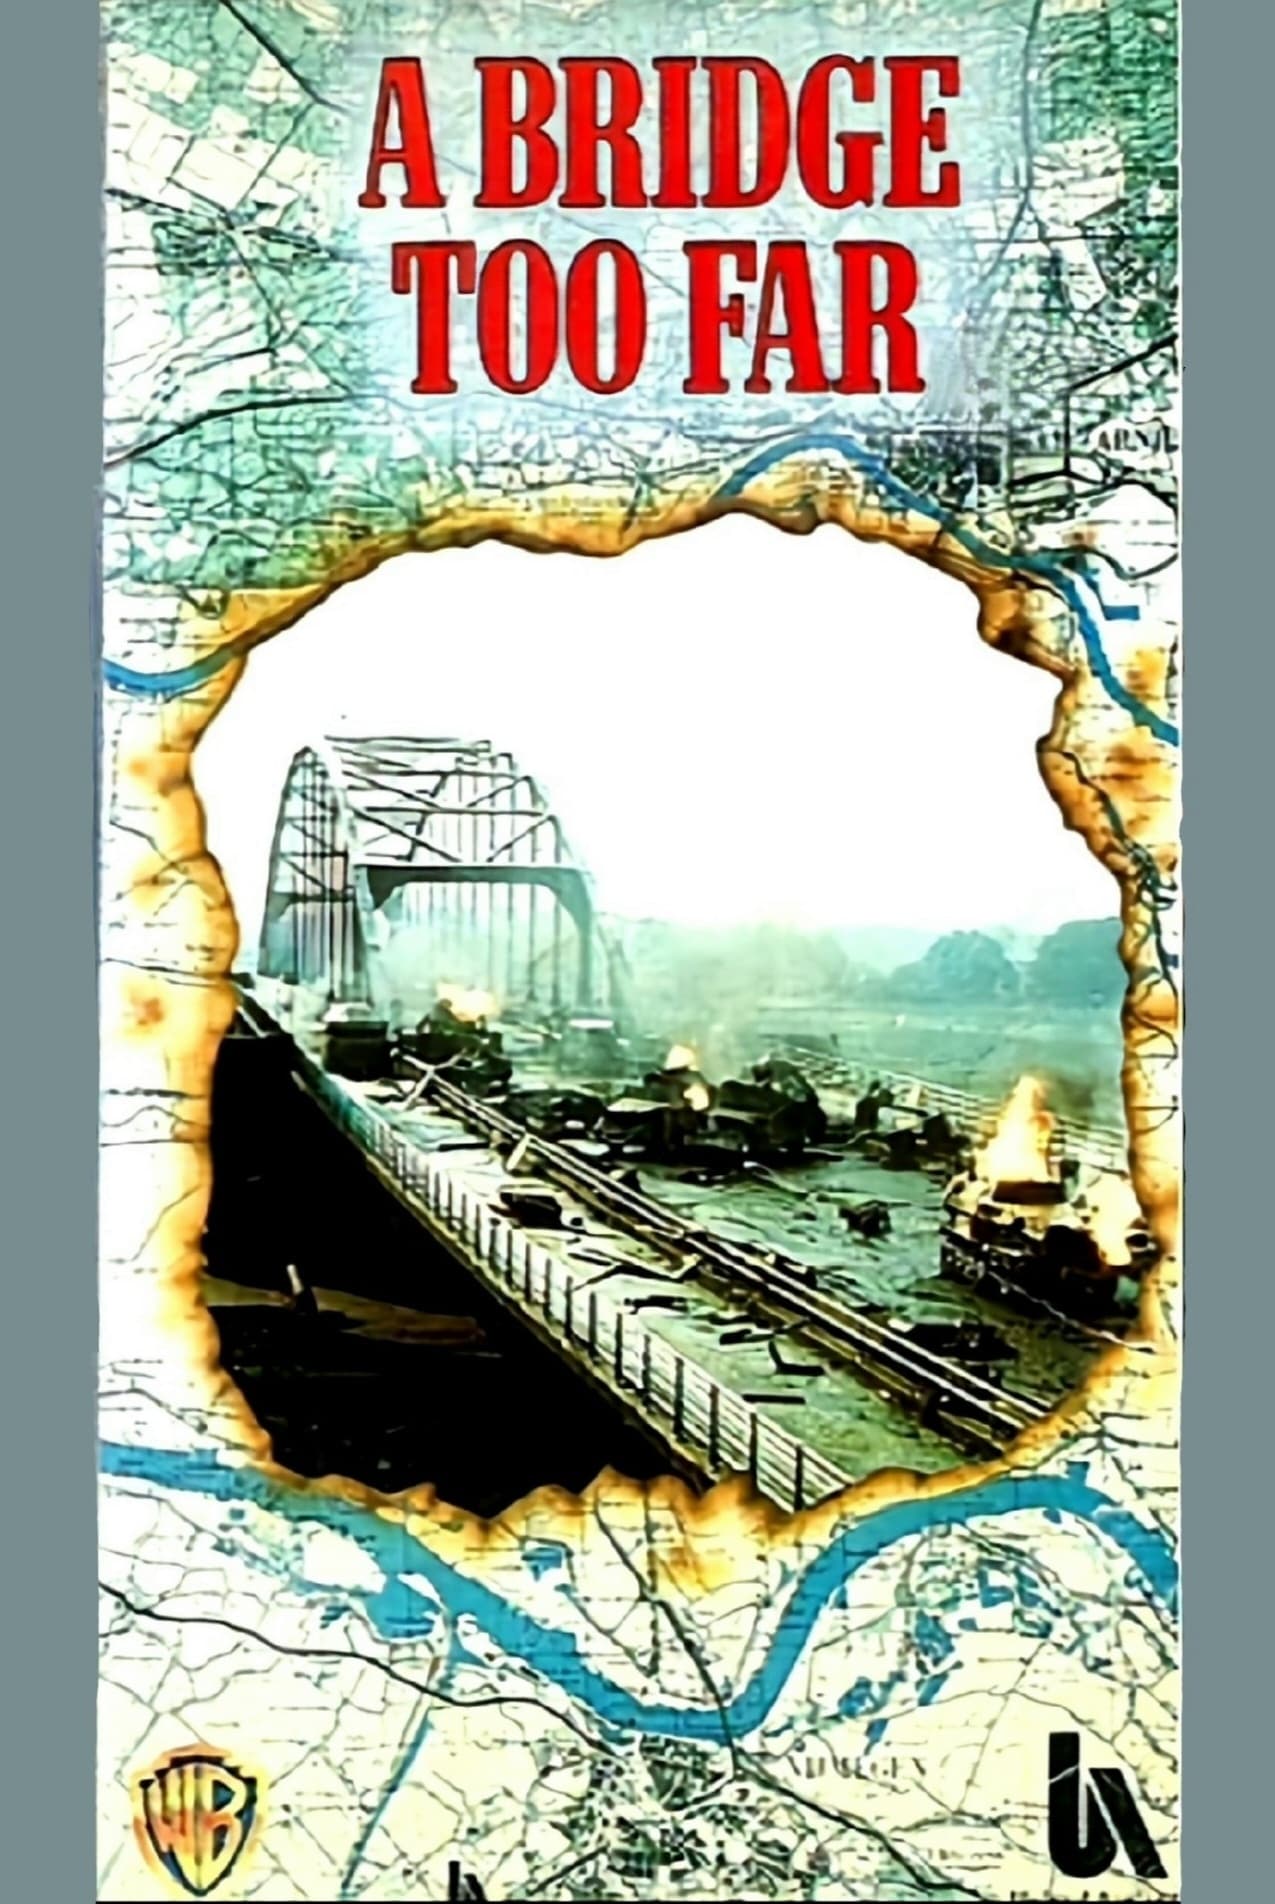 A Bridge Too Far Movie poster